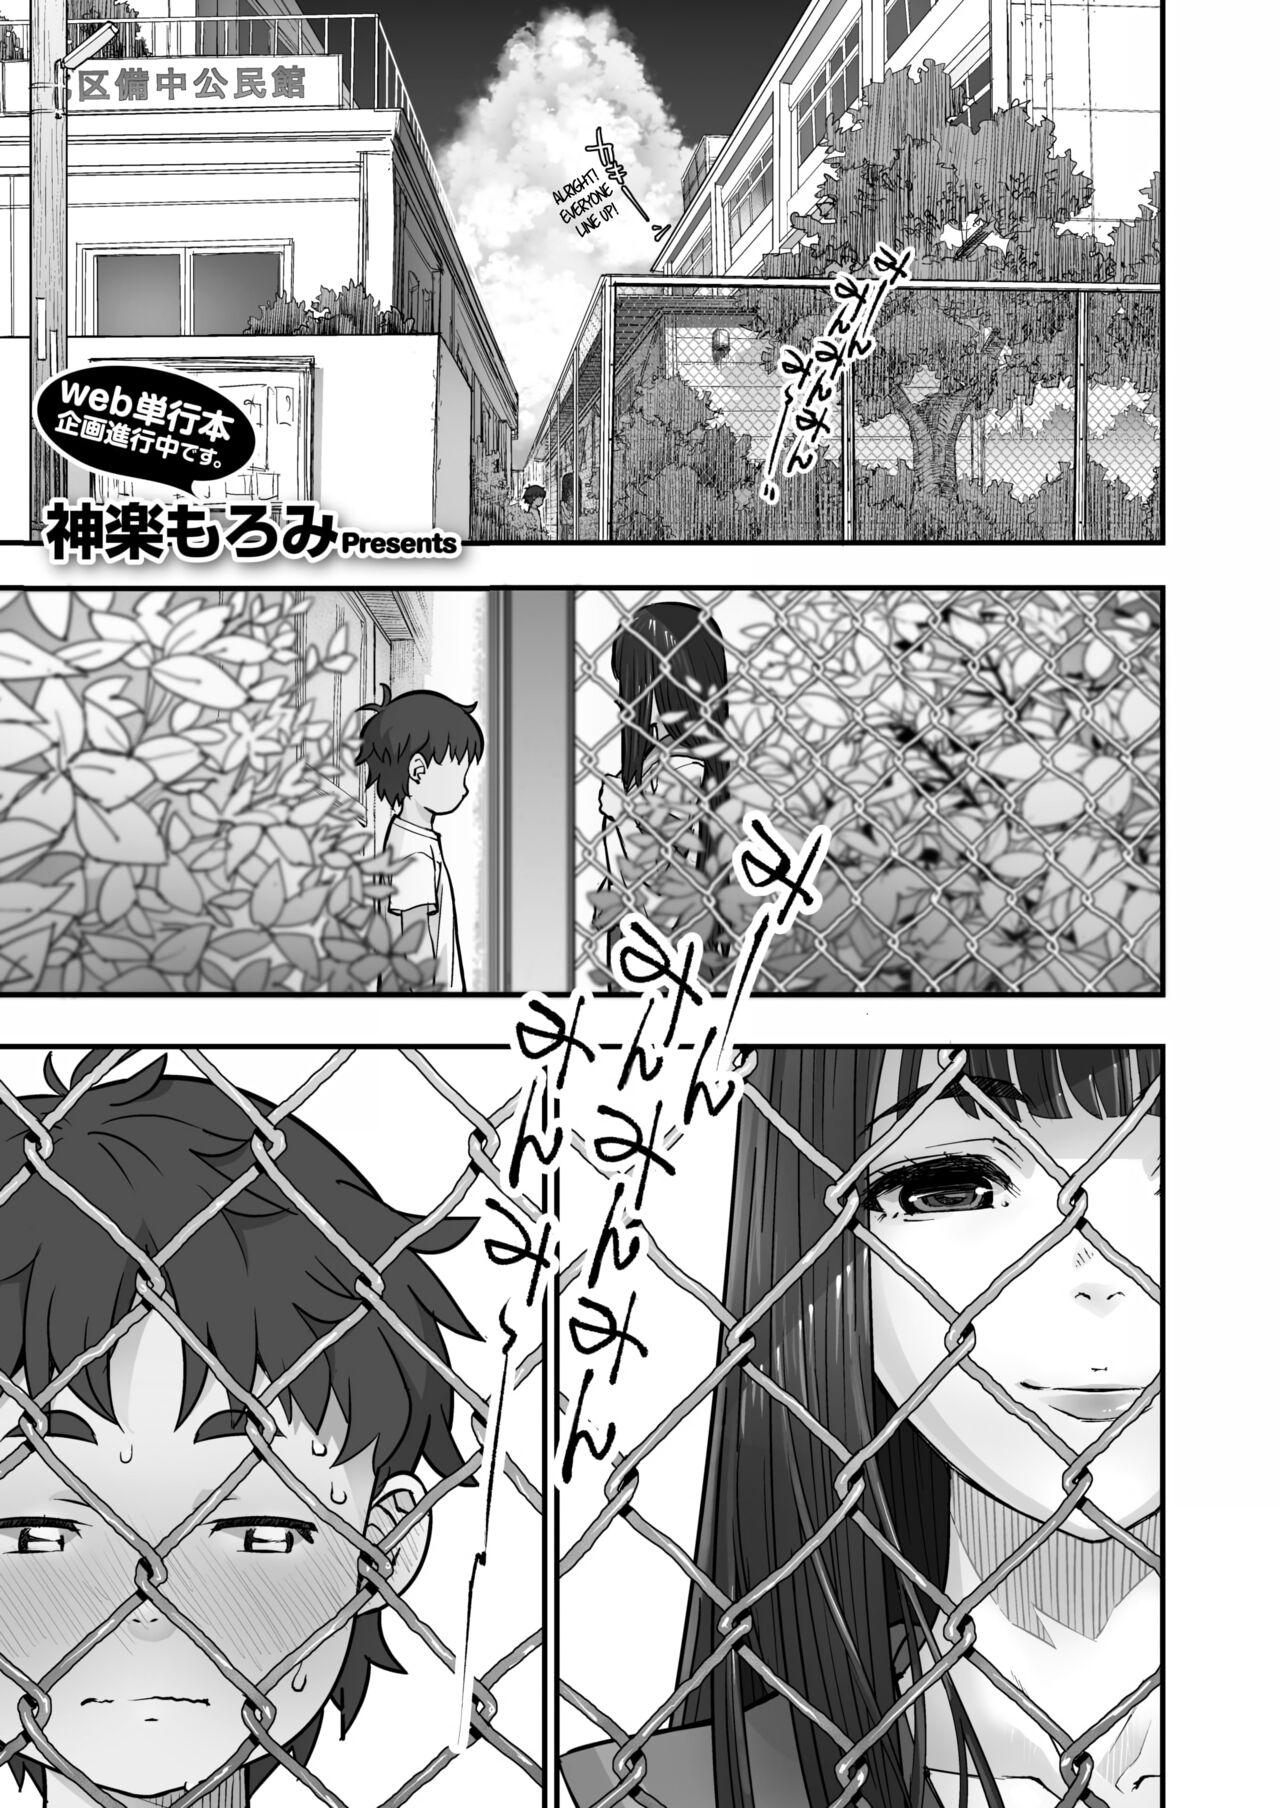 Kanaami Goshi no Natsuyasumi｜Summer Break Through the Wire Fence 0